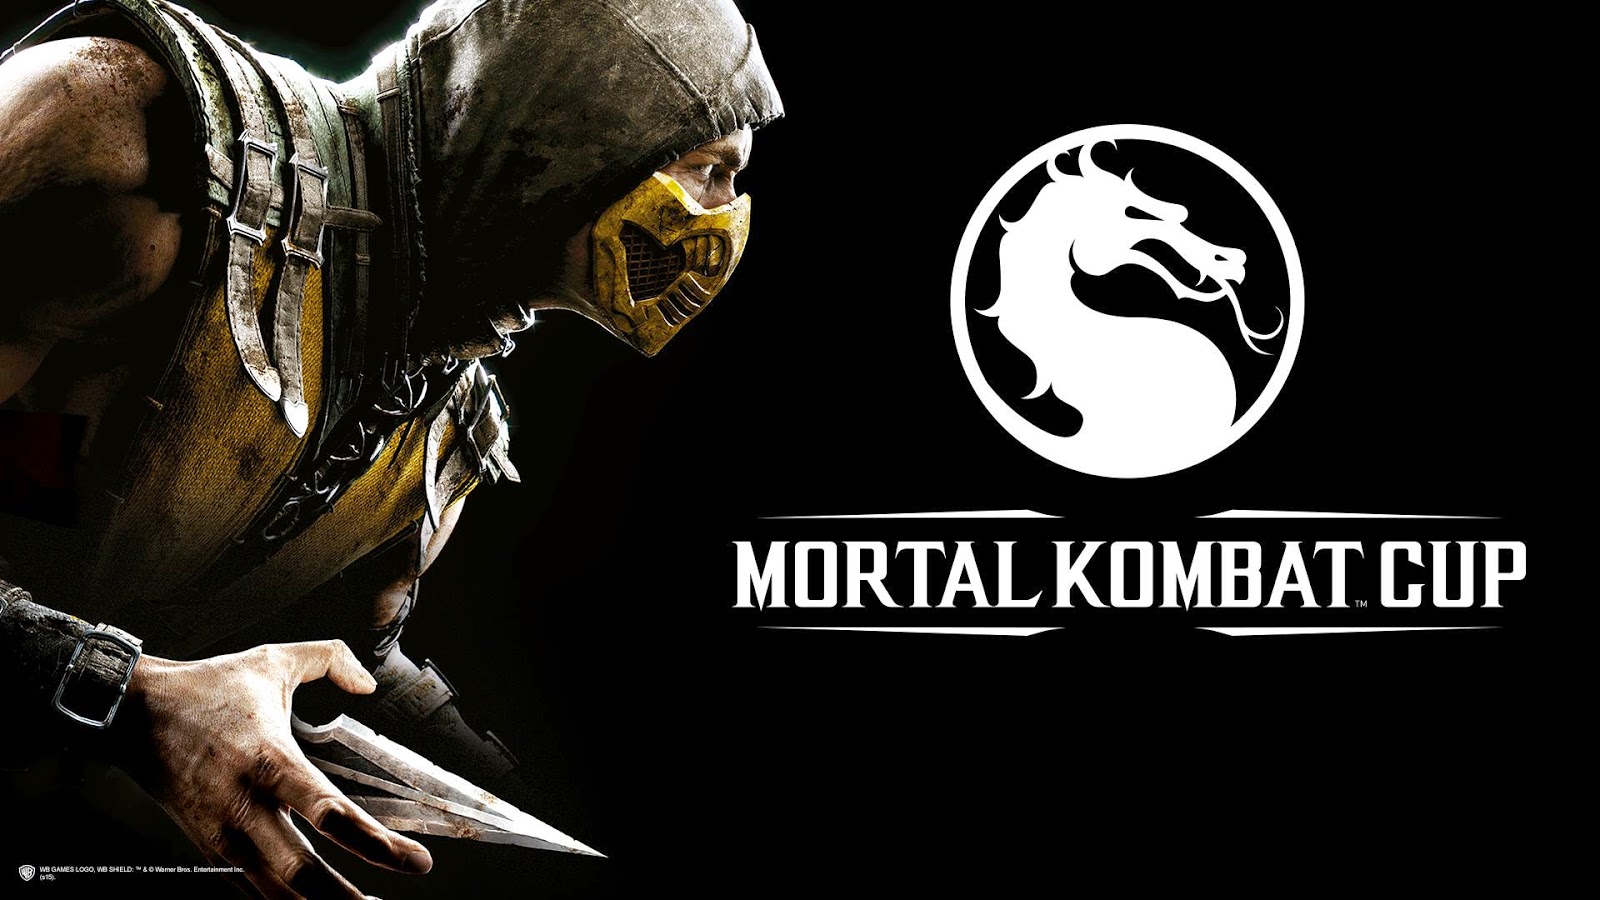 Mortal kombat x updates steam фото 115